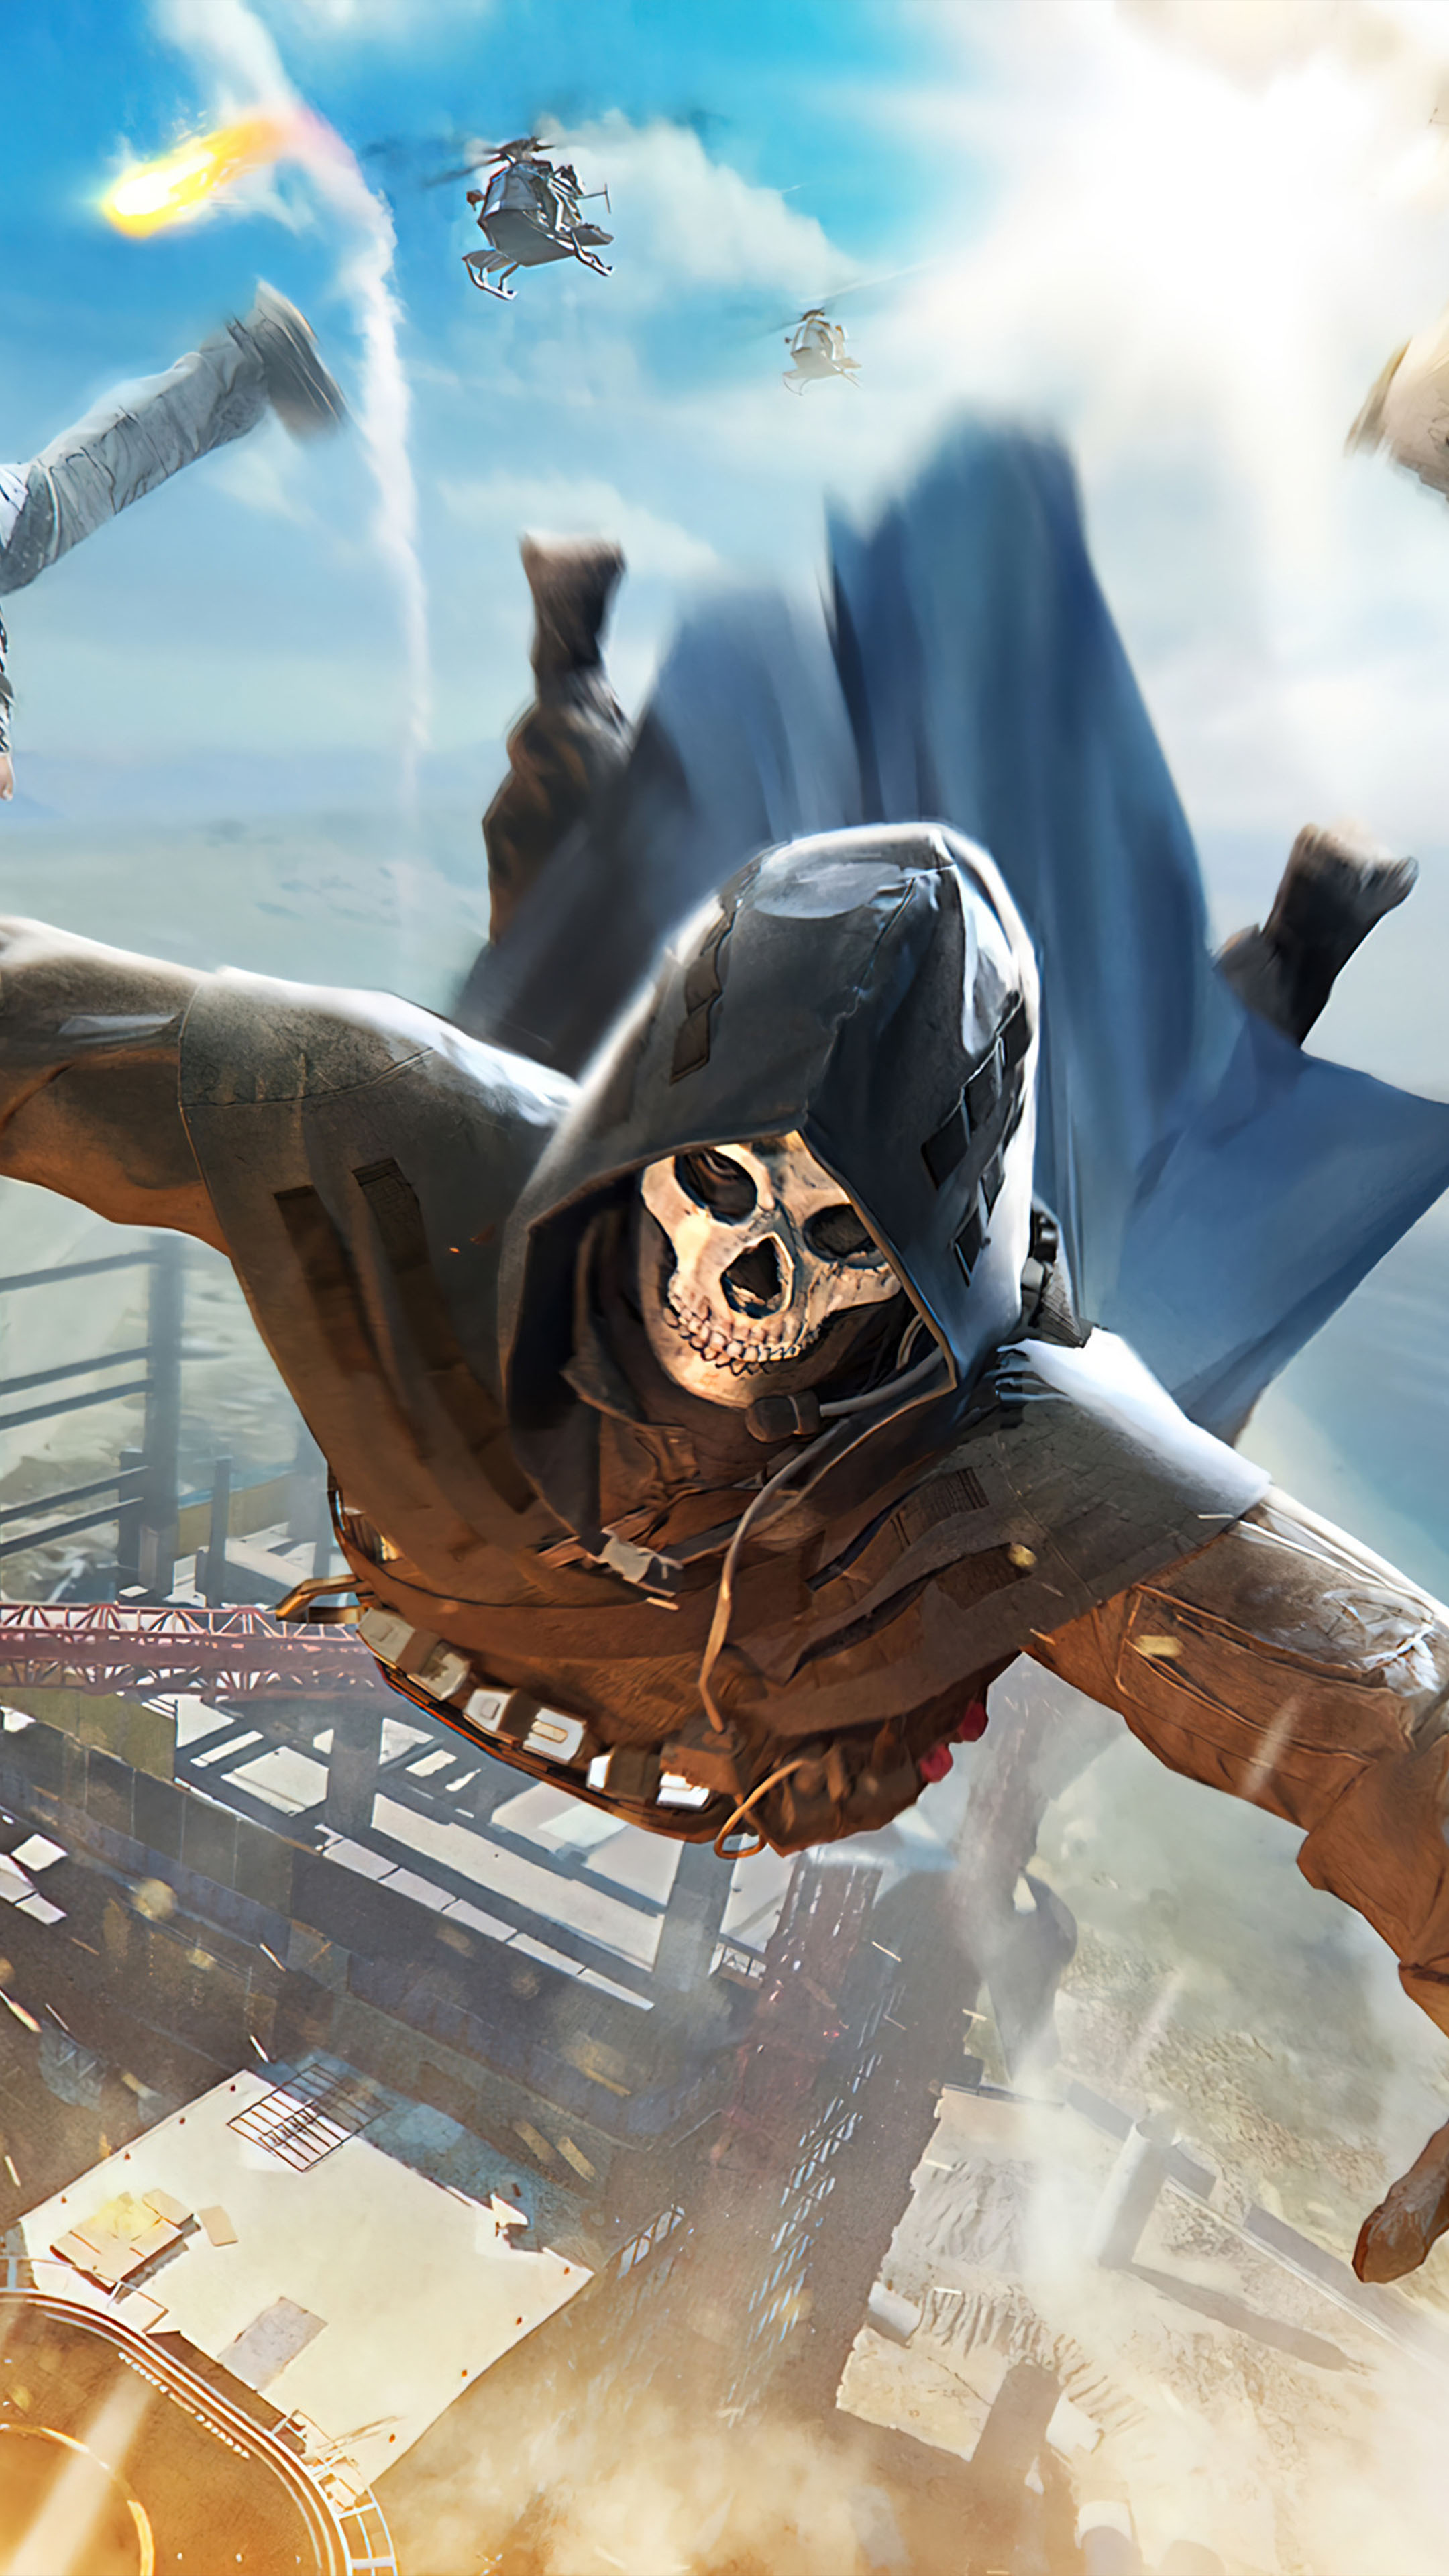 Skull Mask Skydive Call of Duty Mobile 4K Ultra HD Mobile Wallpaper